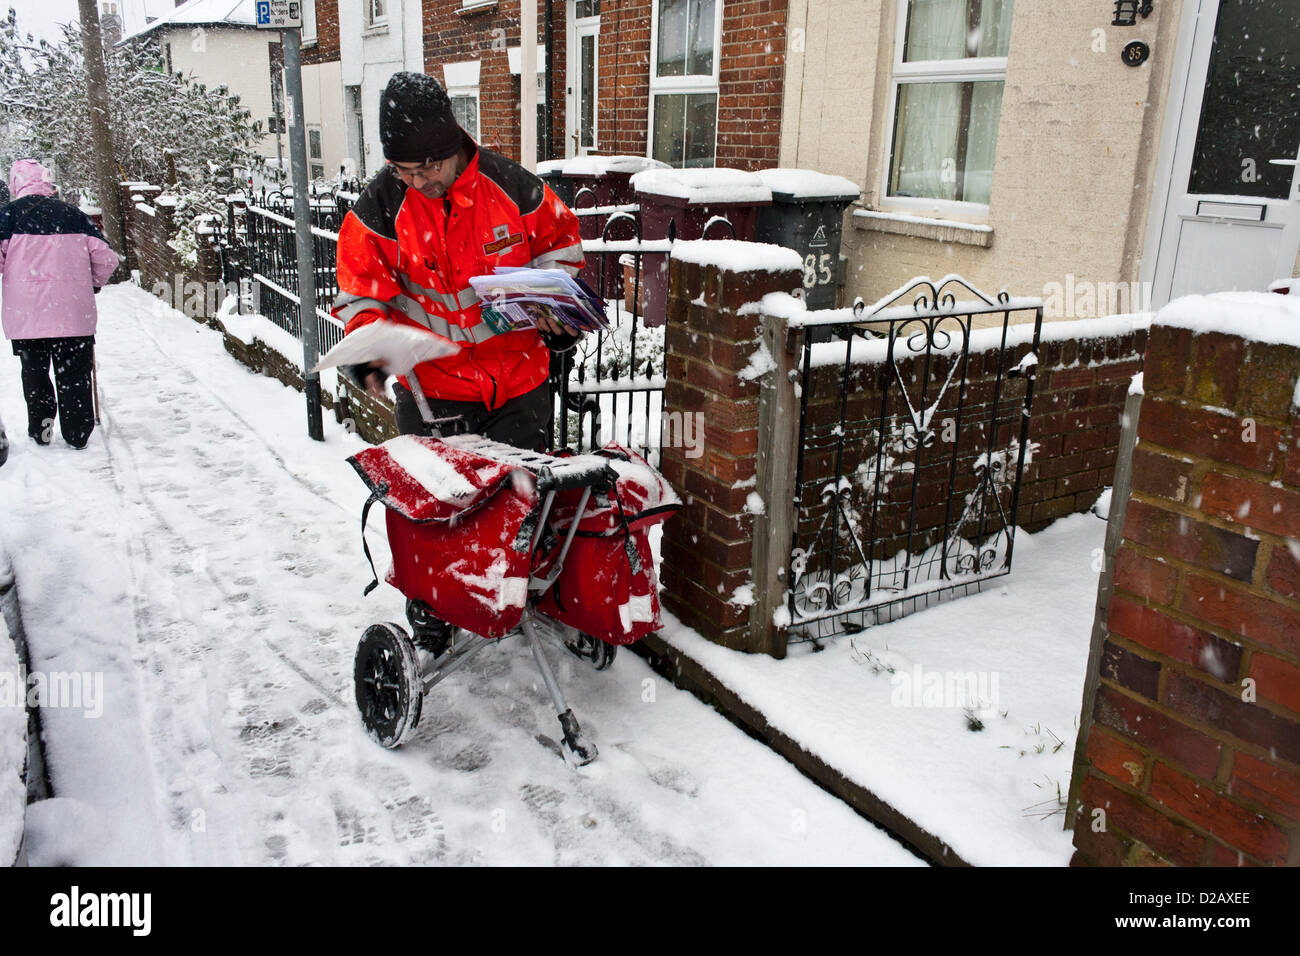 Royal Mail postman offre mail en temps d'hiver neigeux, tandis qu'une femme âgée, escaliers à travers la glace aux pieds. Reading, Berkshire, Angleterre, Royaume-Uni. Banque D'Images